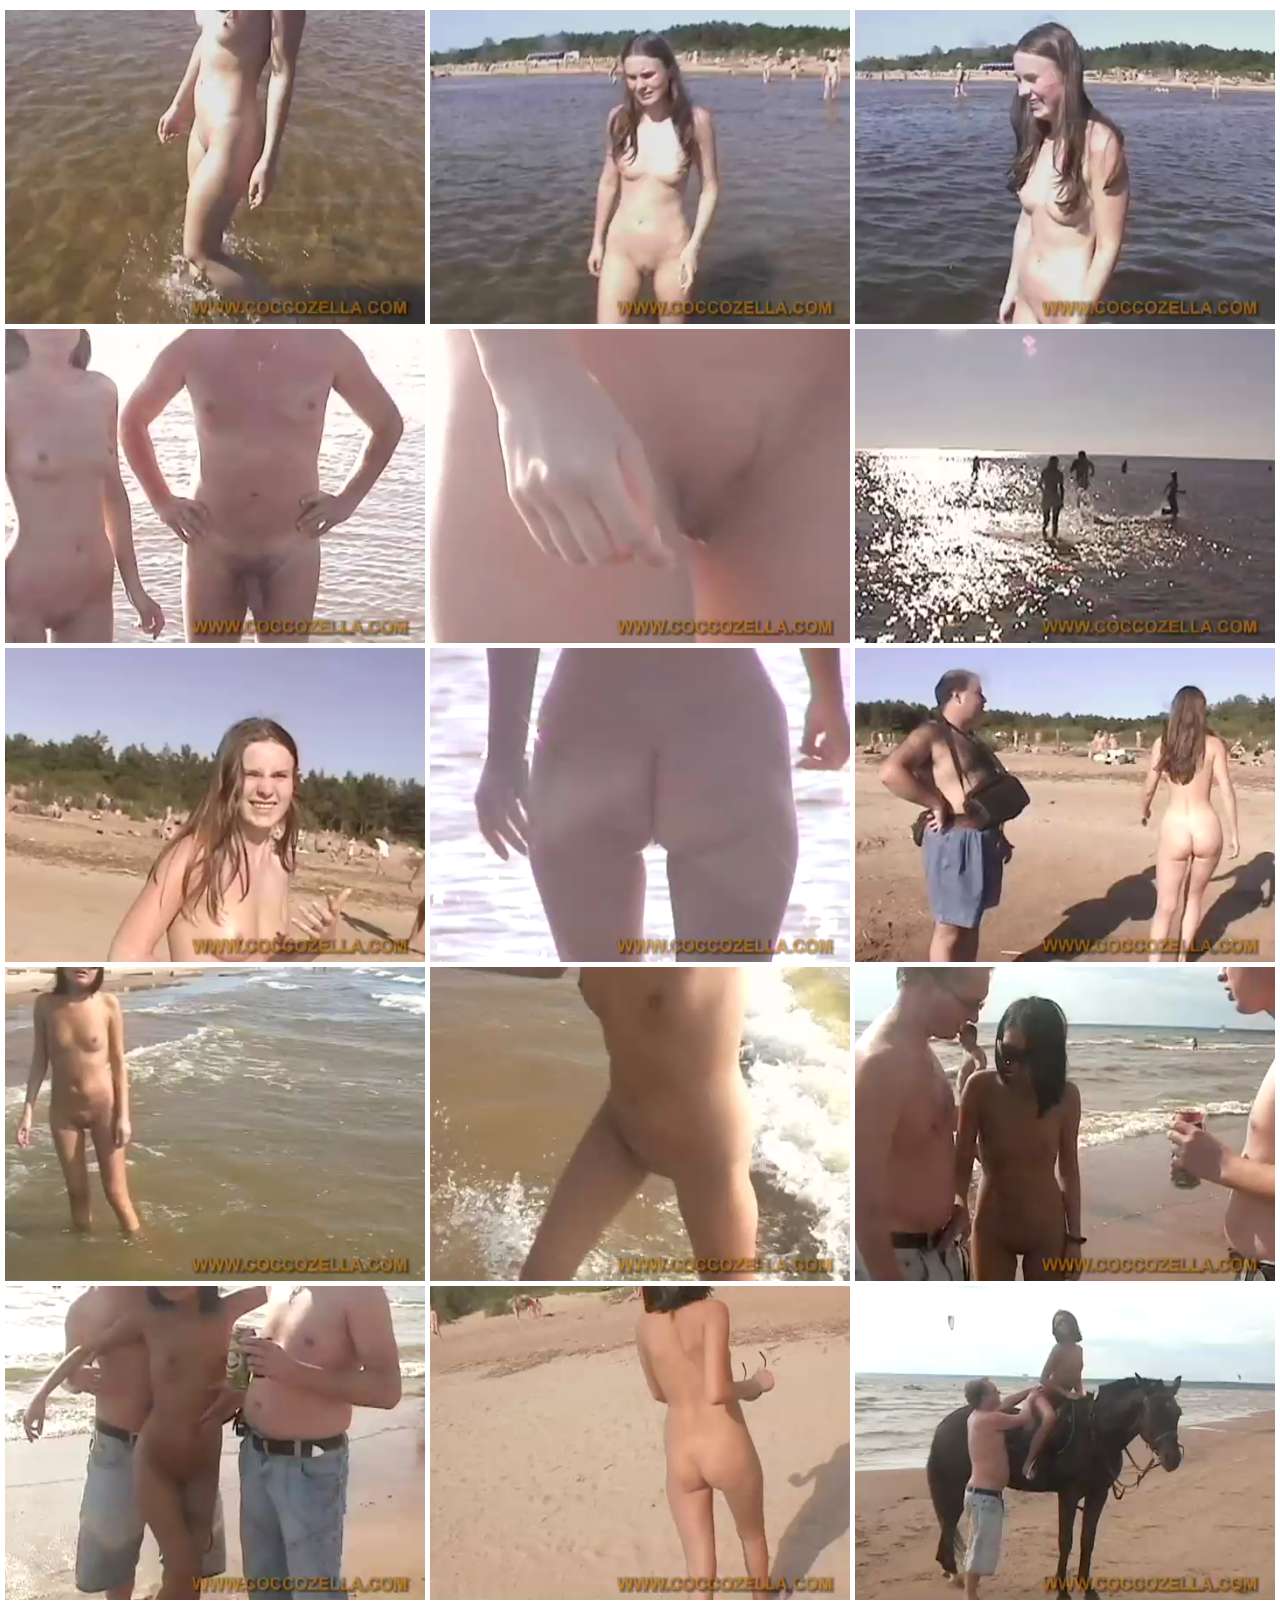 Kirbon_-_Russian_Nudist_Beach_-_Clip_1_thumb.jpg